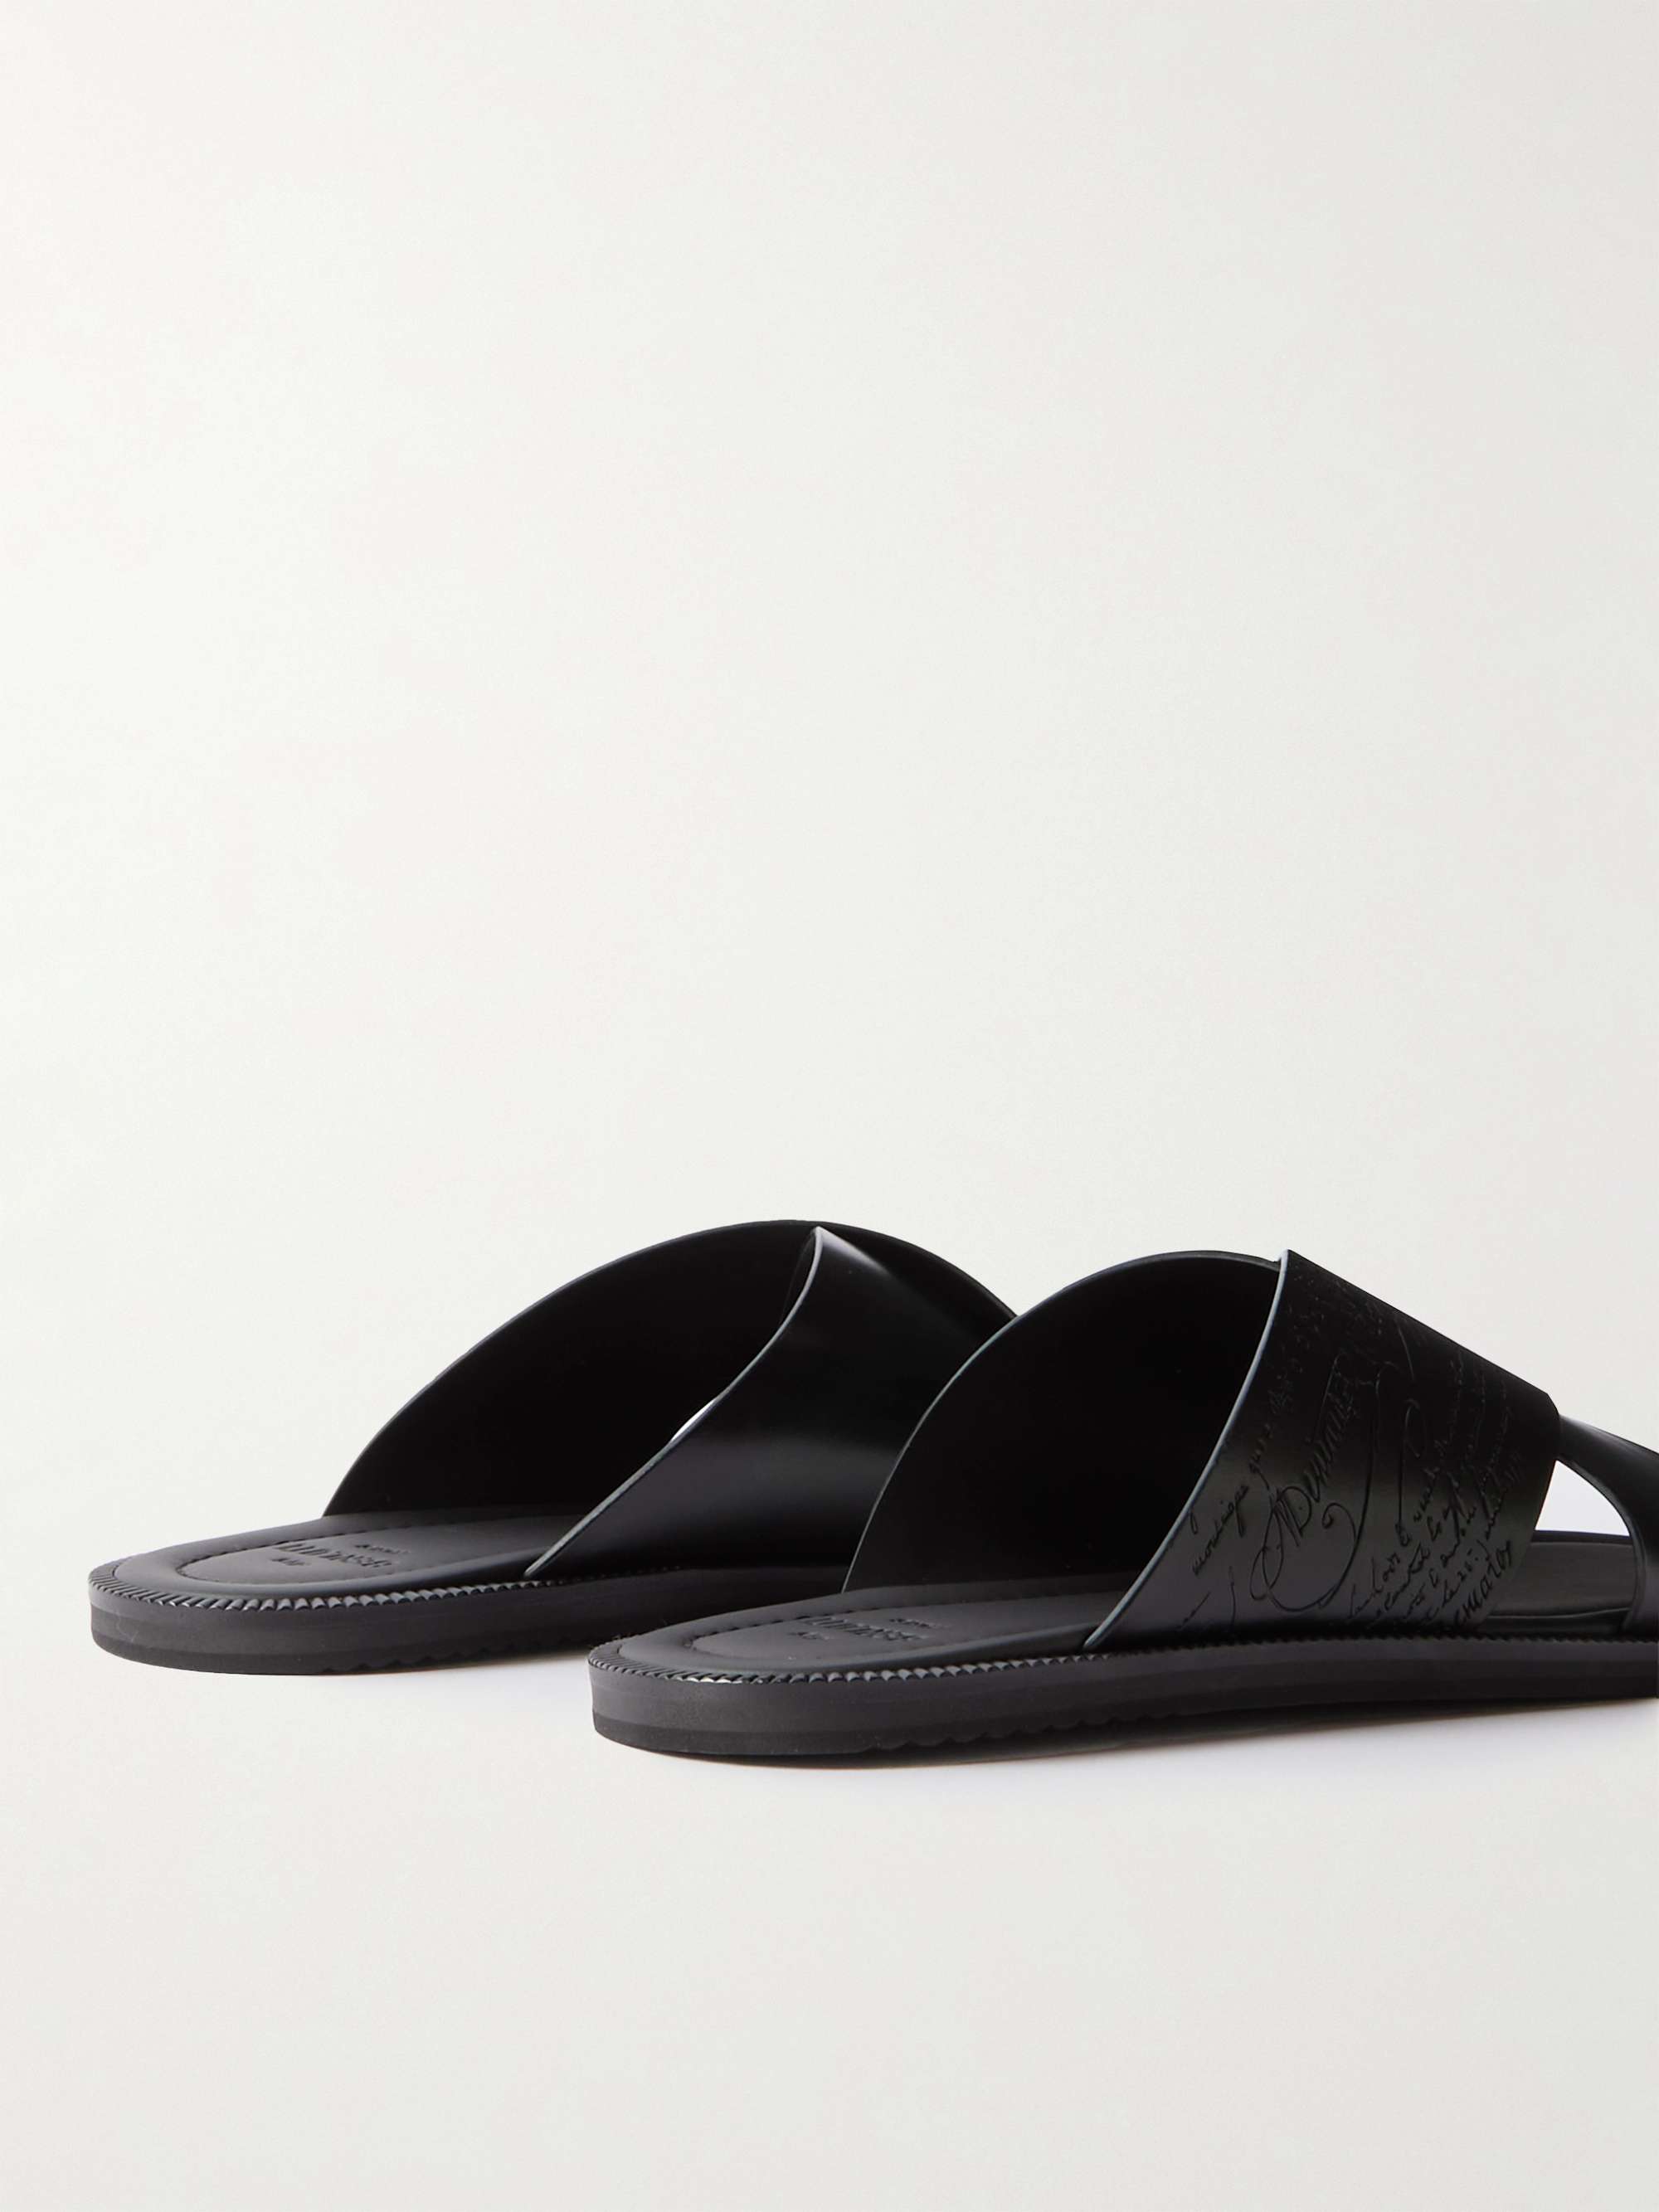 BERLUTI Scritto Venezia Leather Sandals